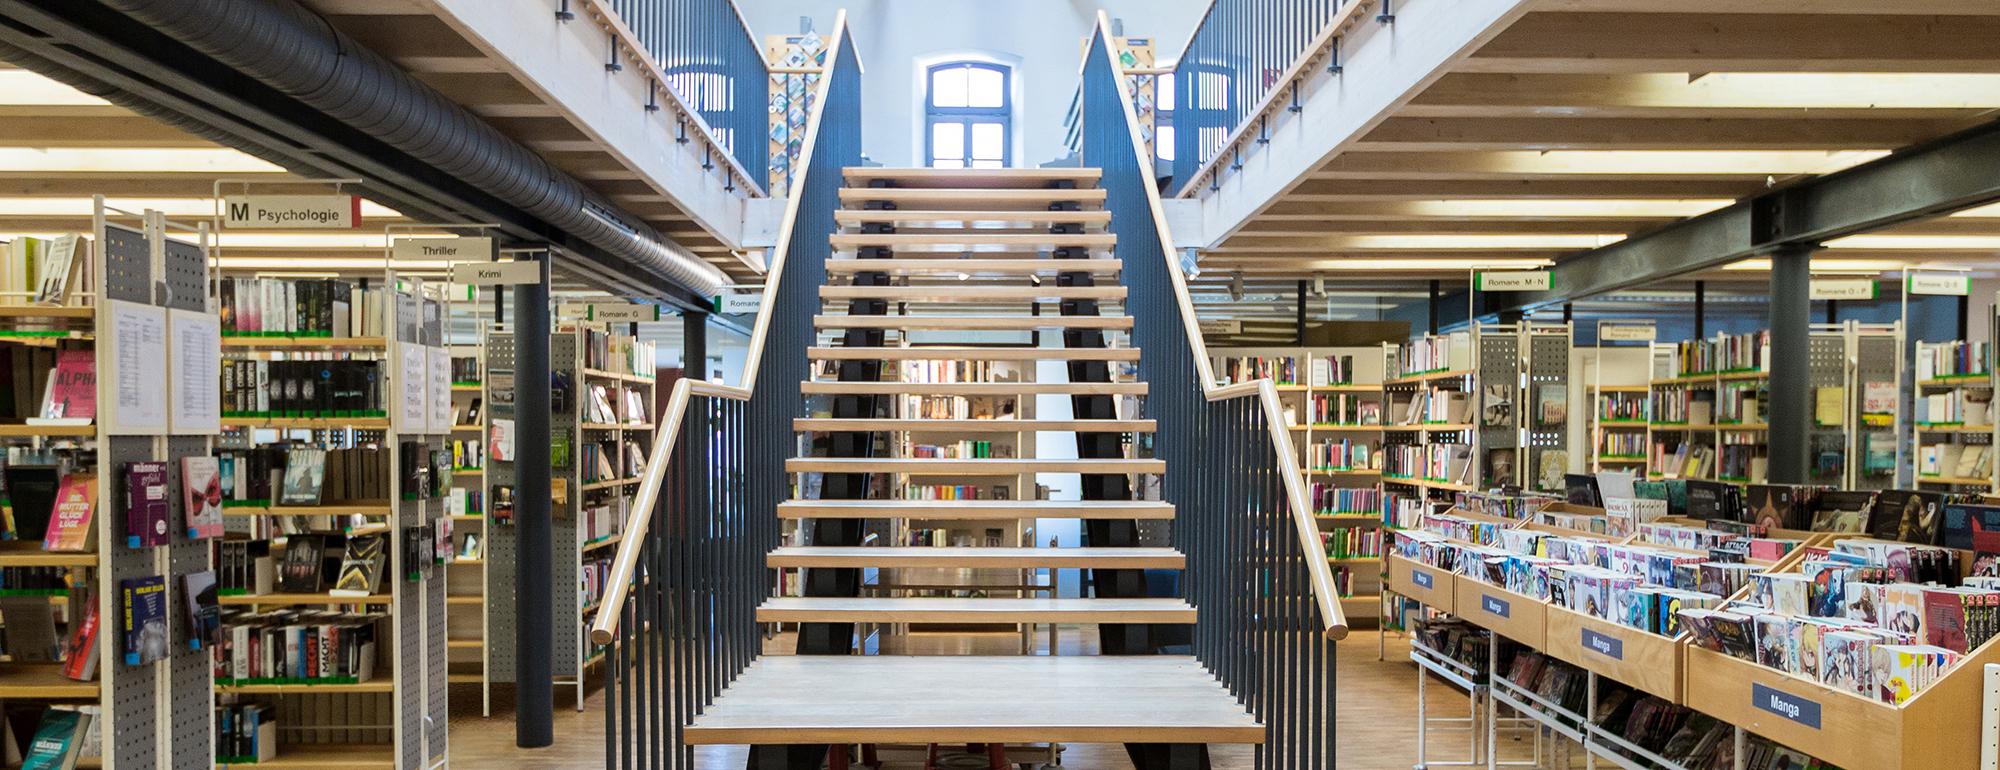 Treppe_Bücherei